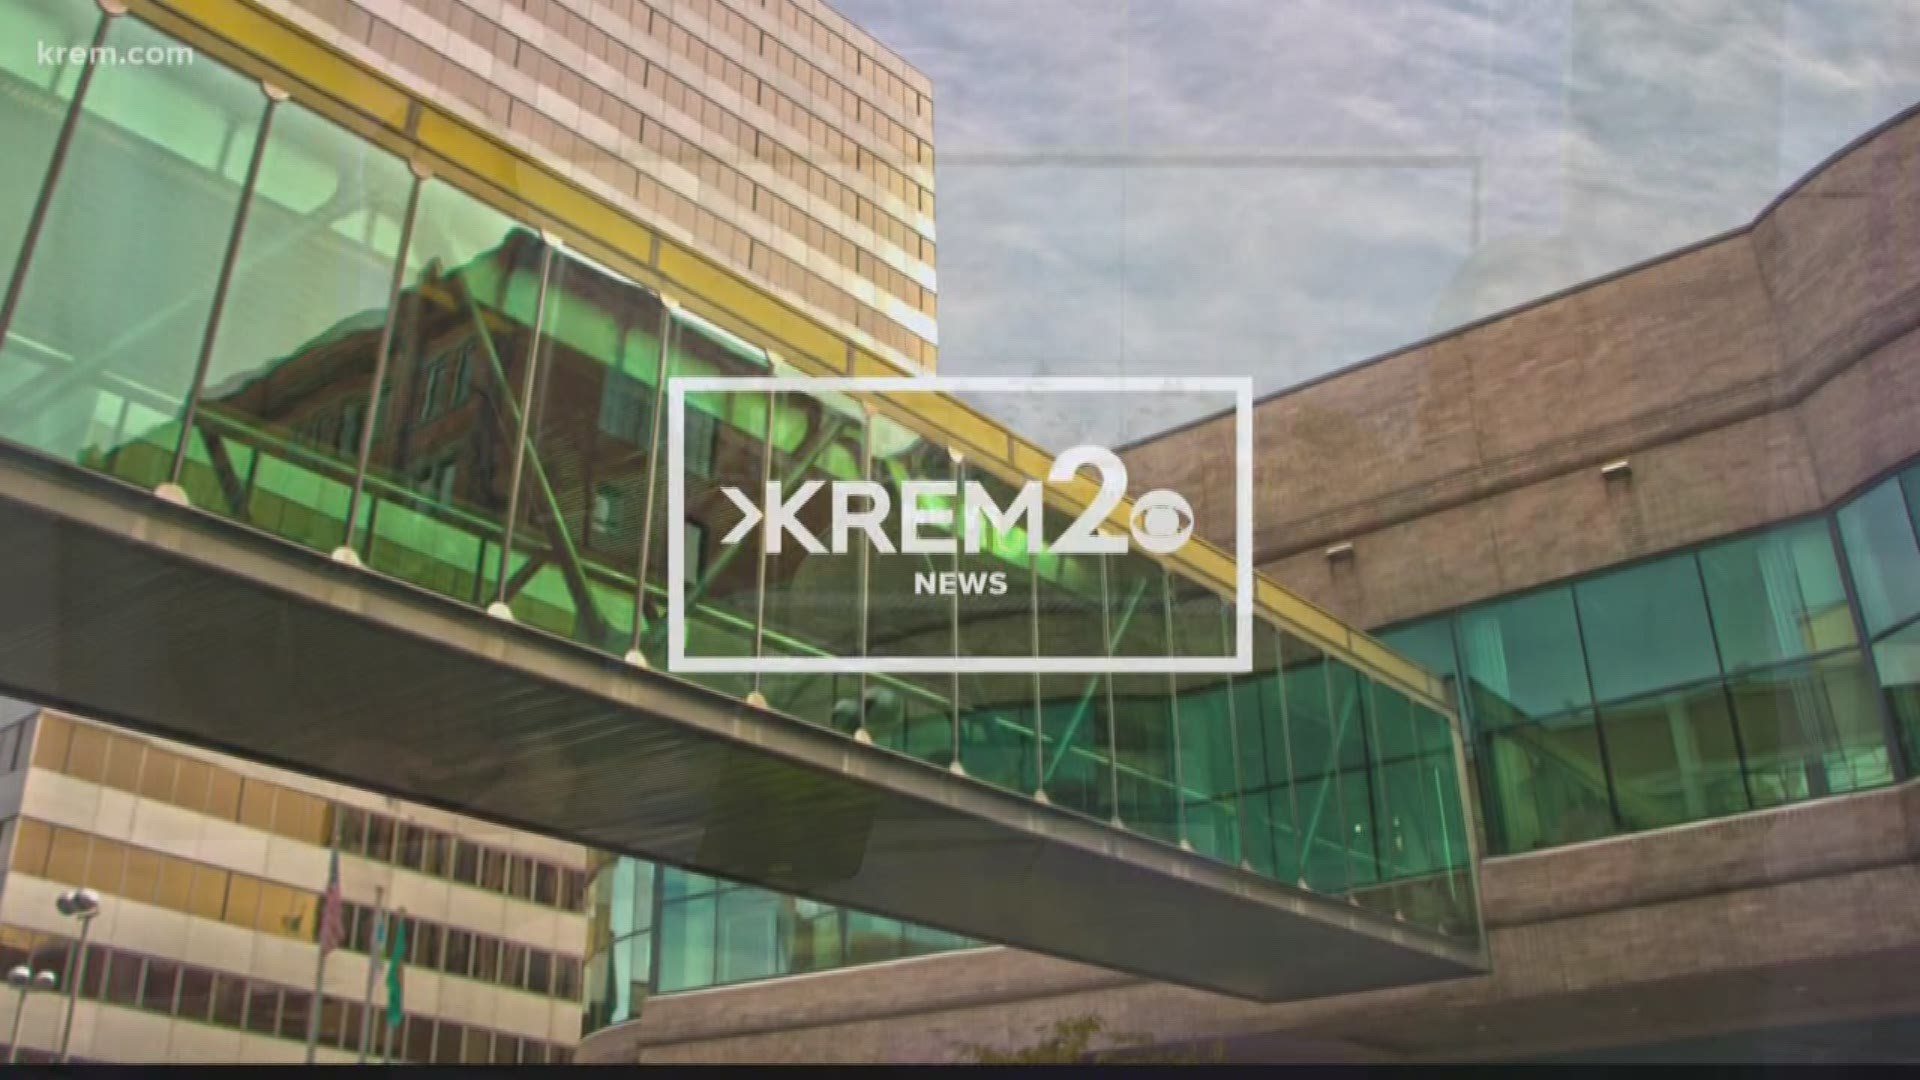 KREM 2 News headlines at 6 p.m. on January 21, 2020.